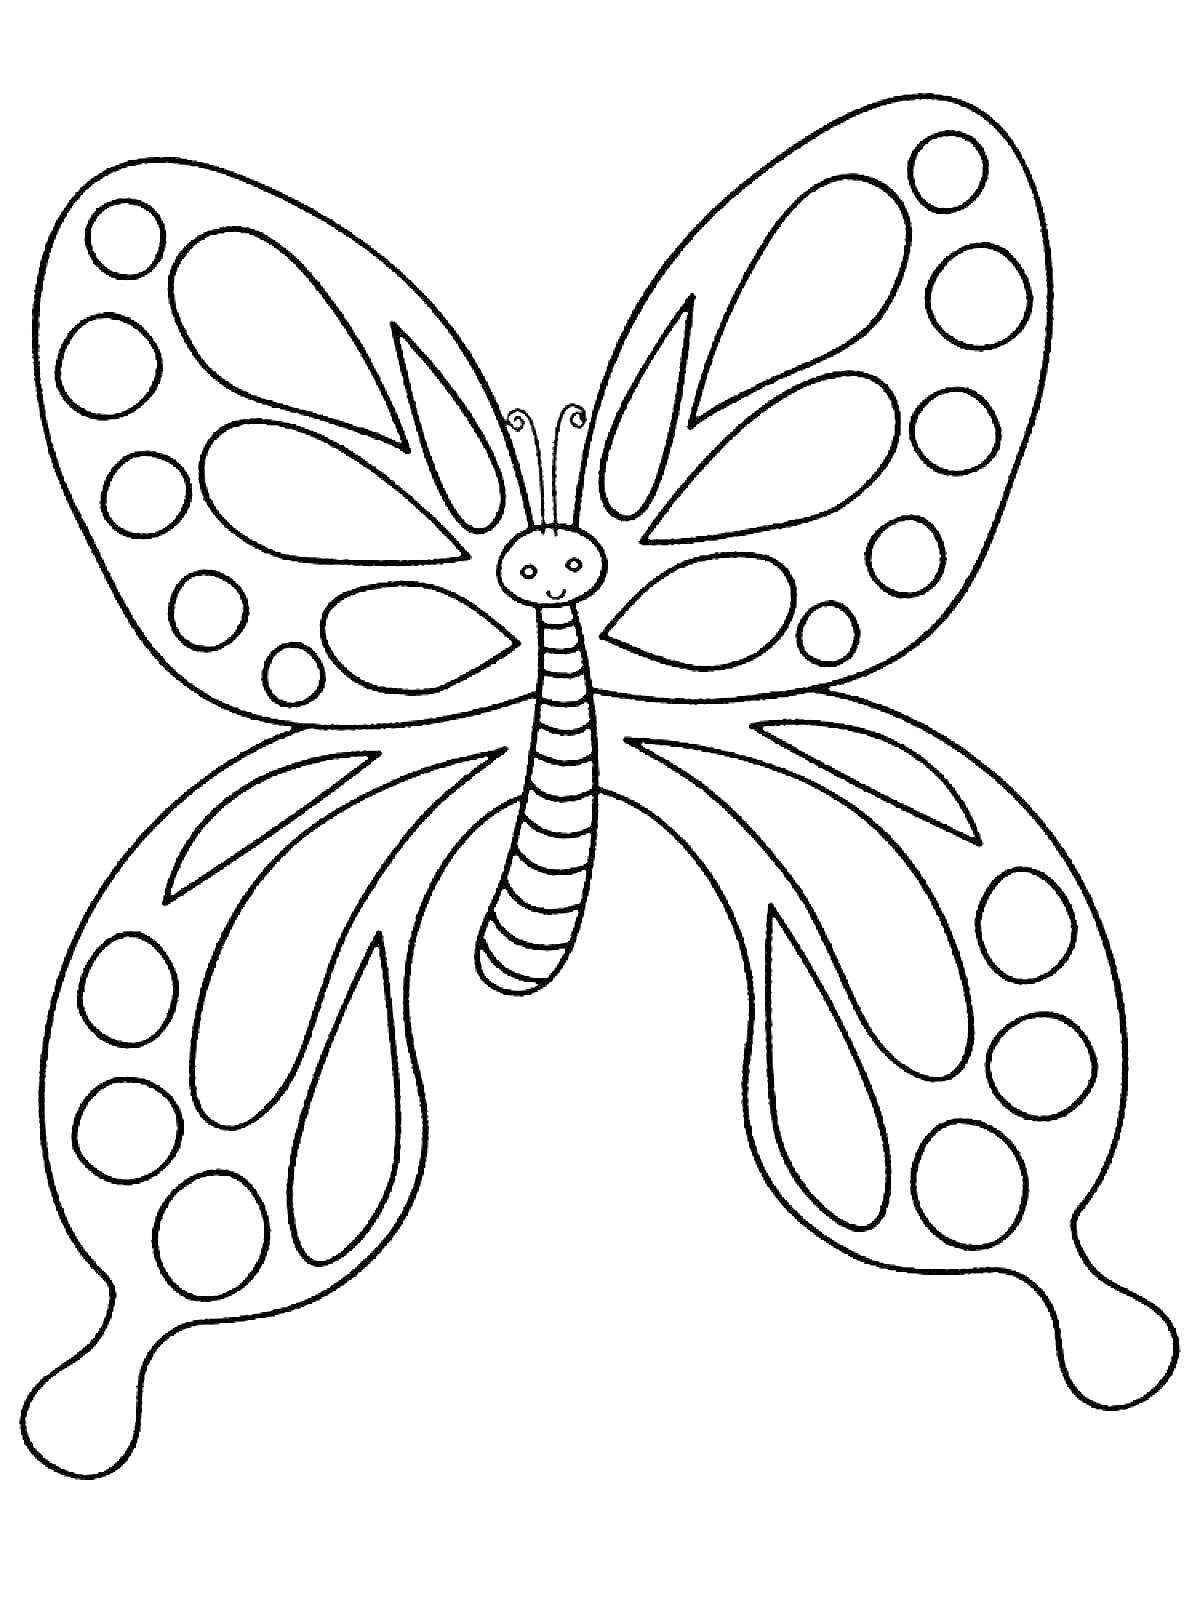 Раскраска Бабочка с узором на крыльях, улыбающееся лицо